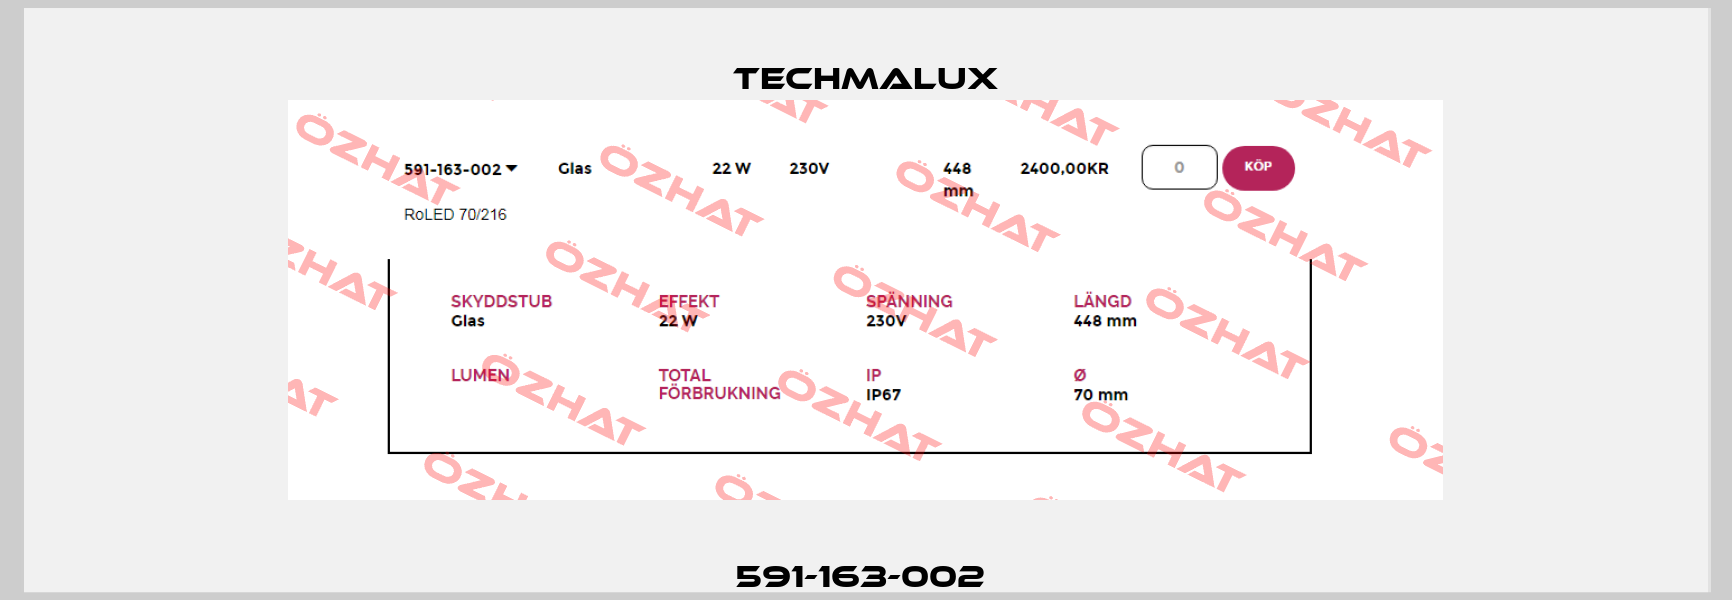 591-163-002  Techmalux